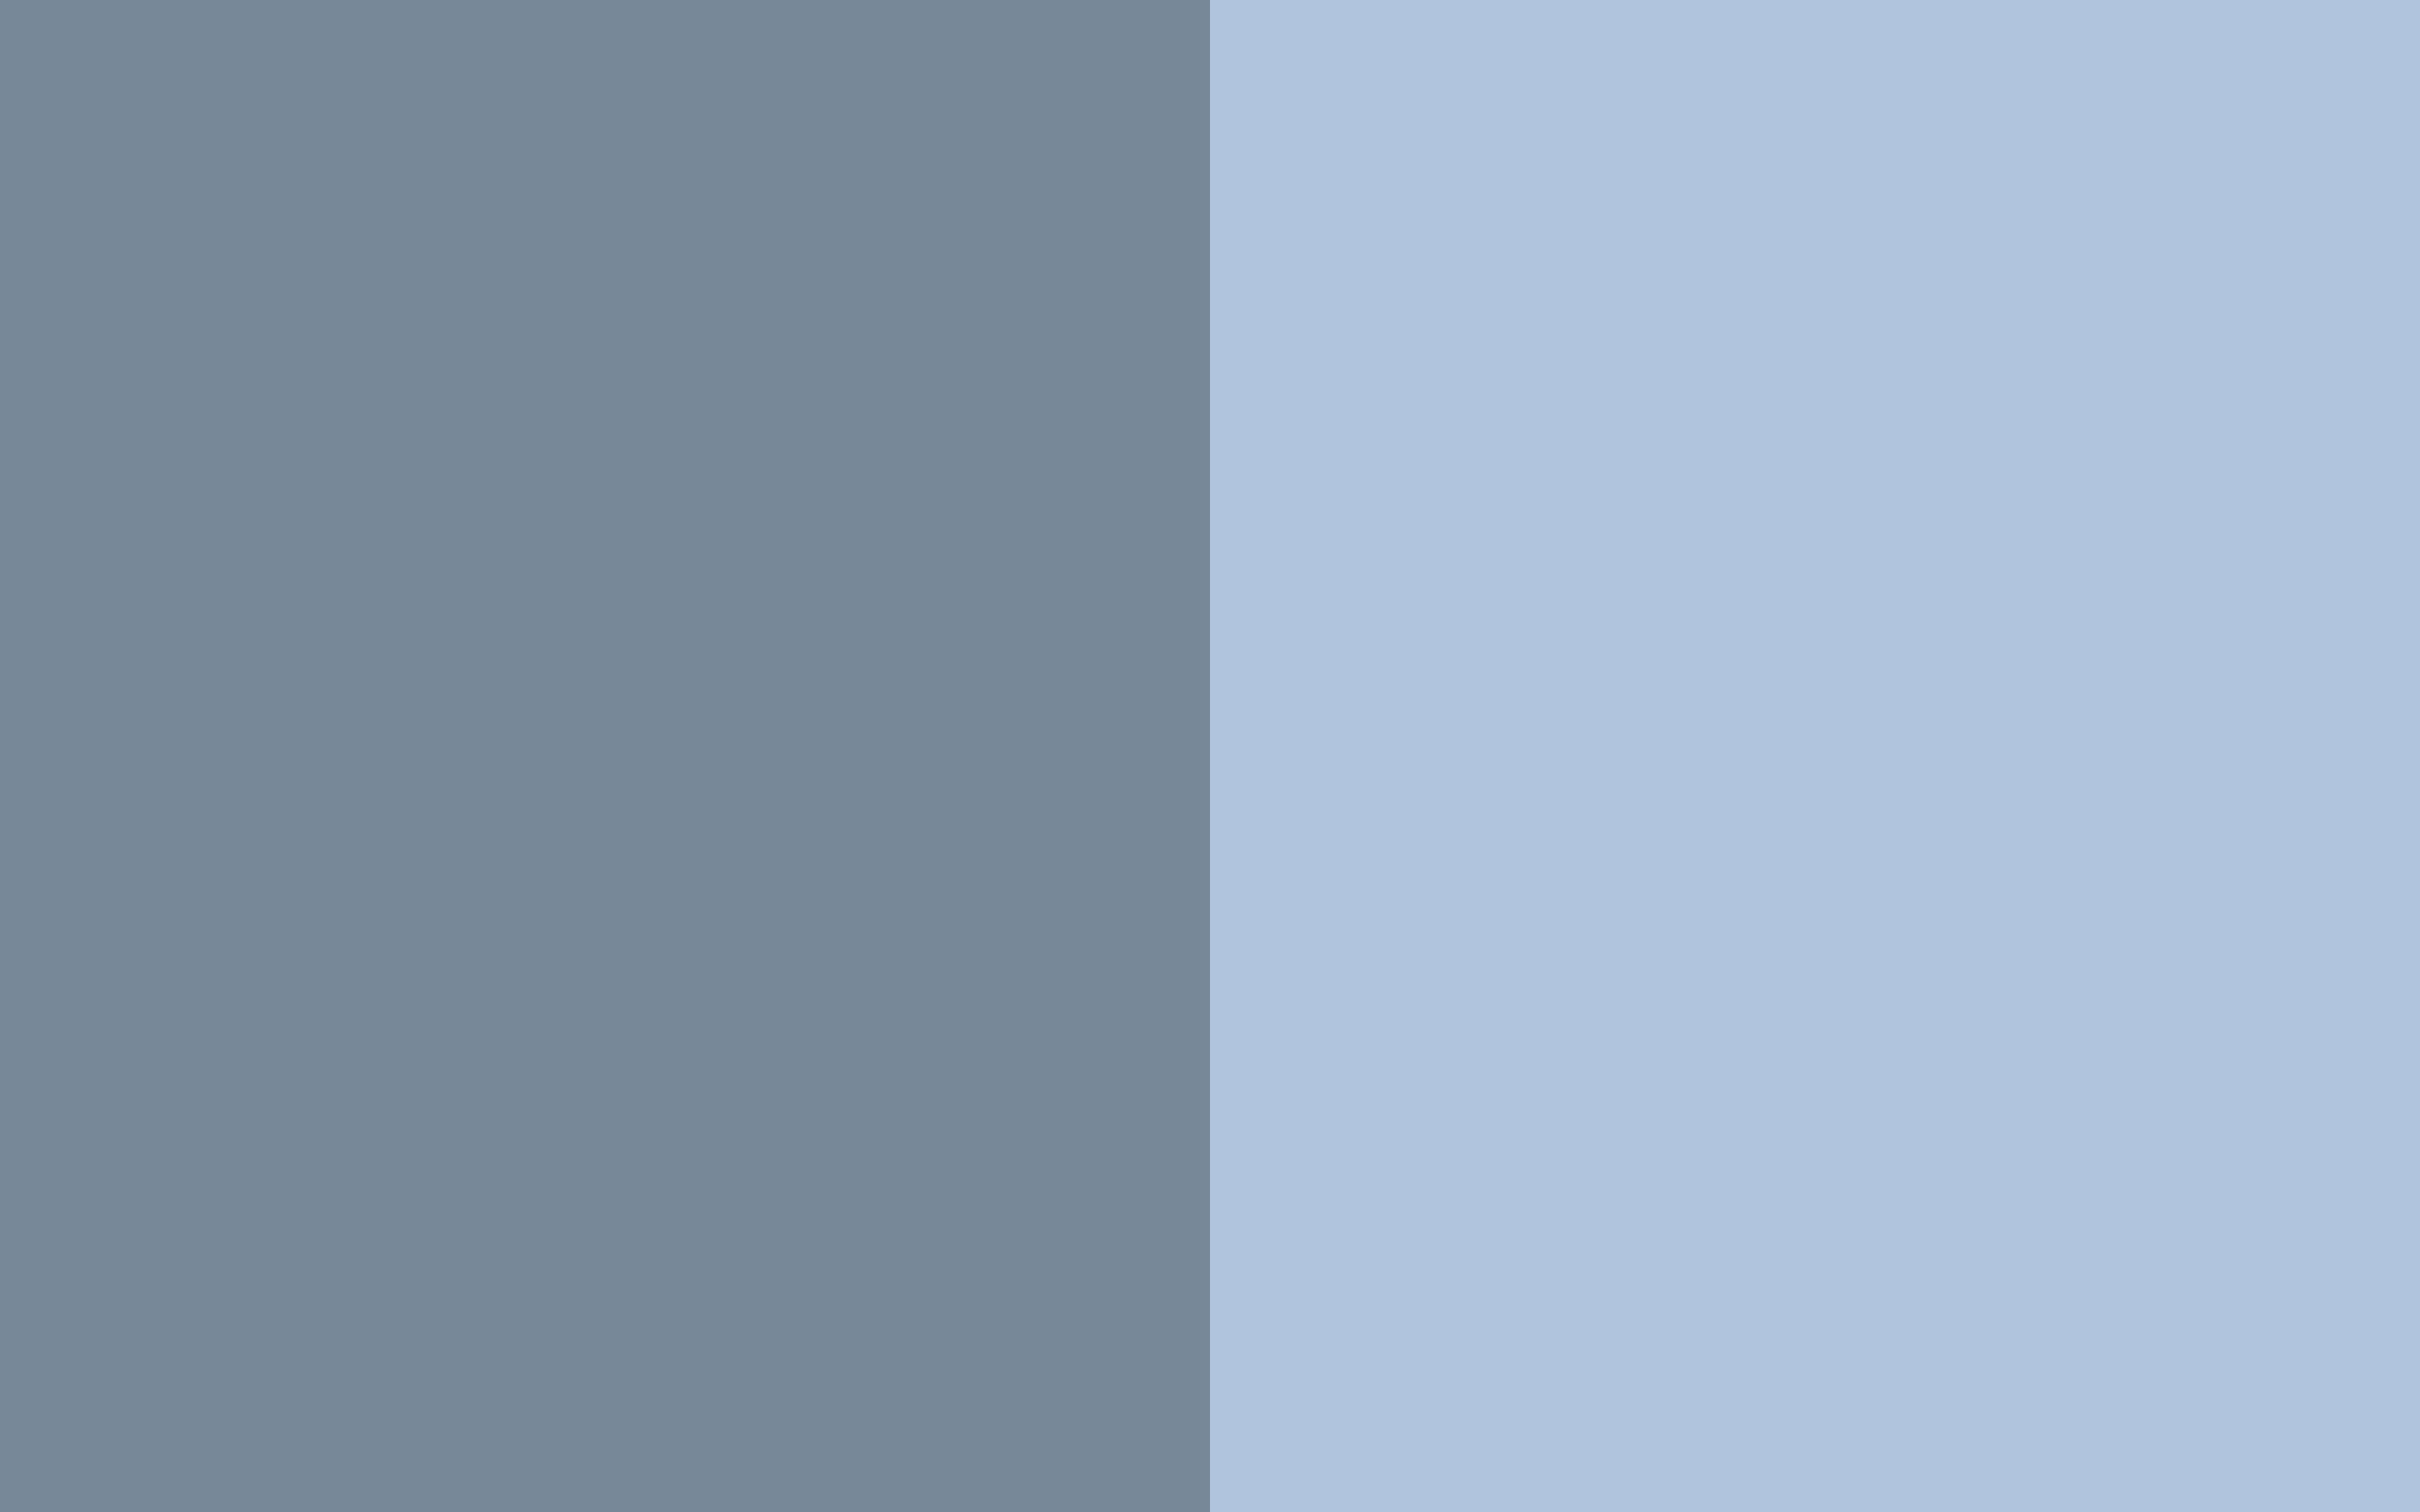 blaue und graue tapete,blau,schwarz,tagsüber,grau,text